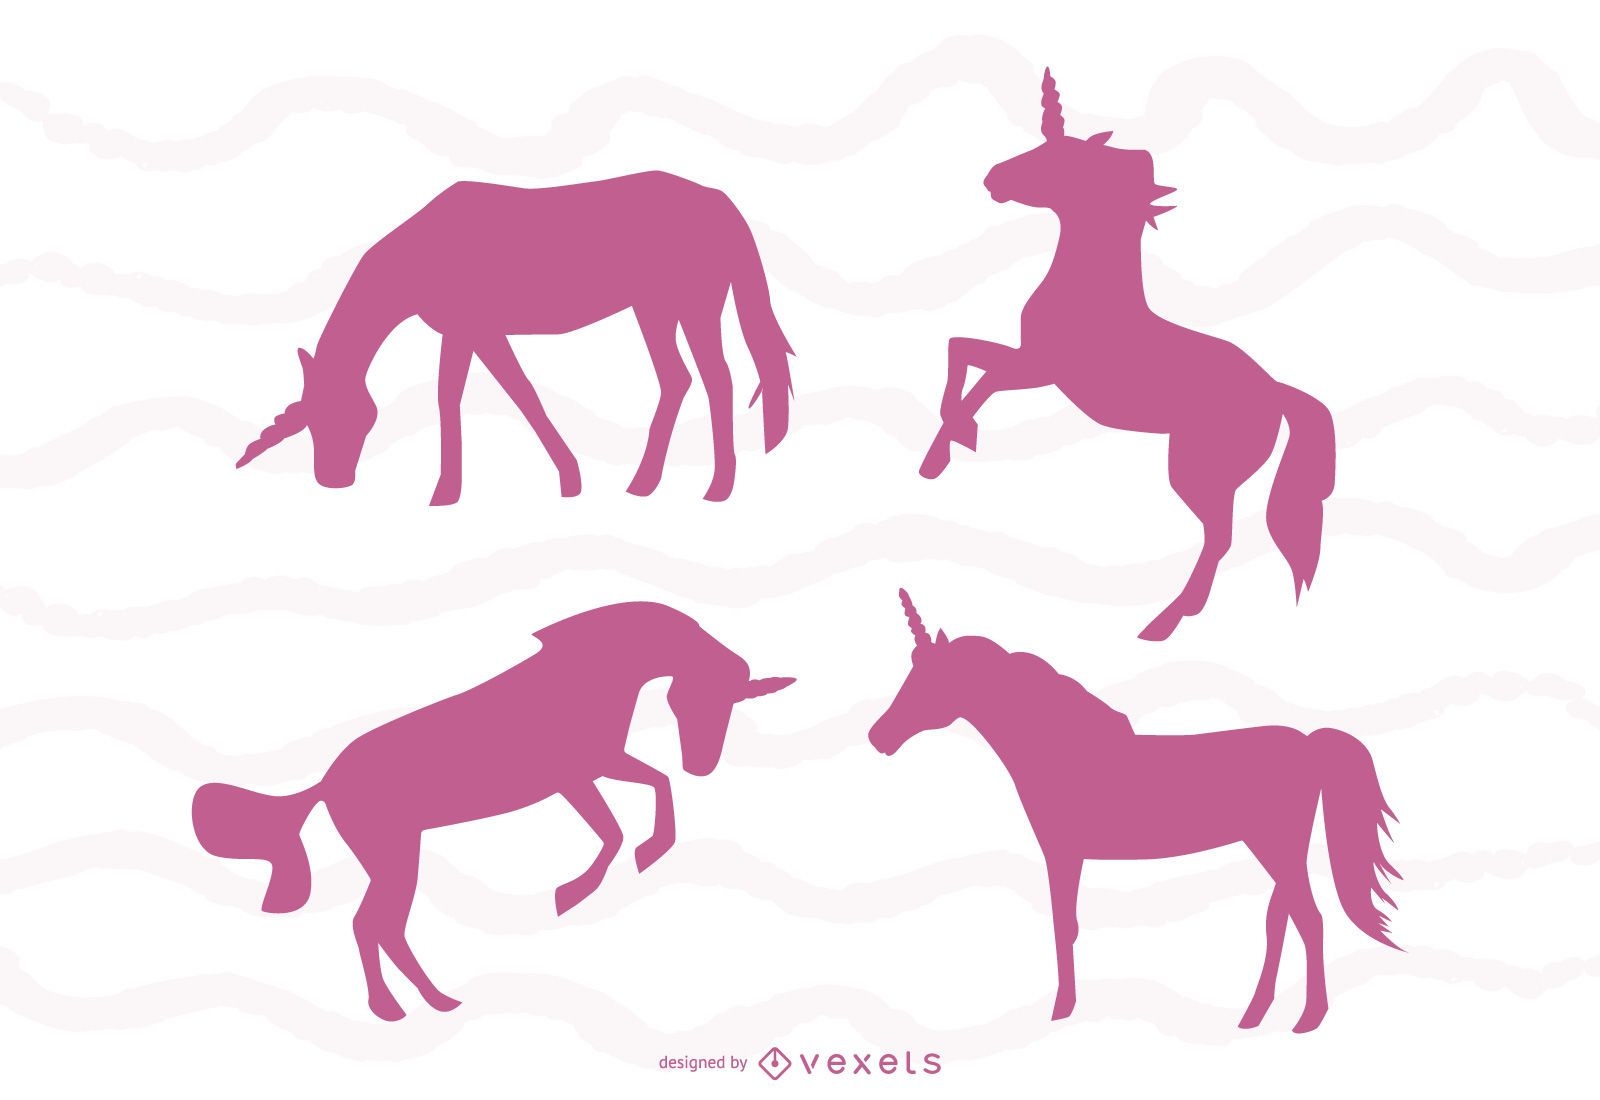 Unicorn silhouettes set